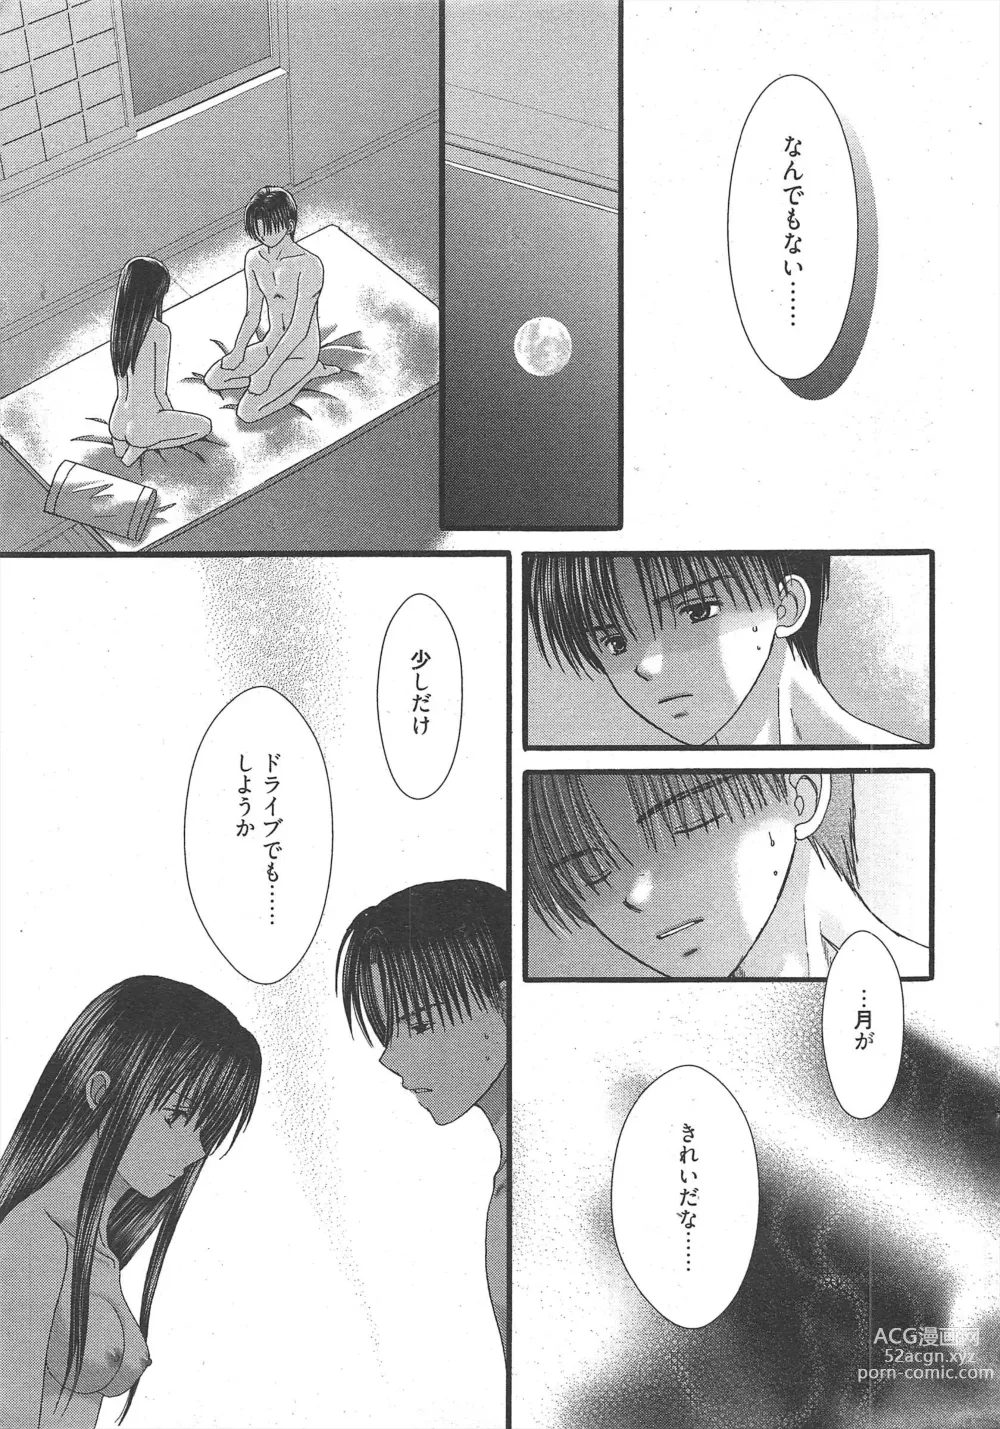 Page 19 of manga Manga Bangaichi 2011-03